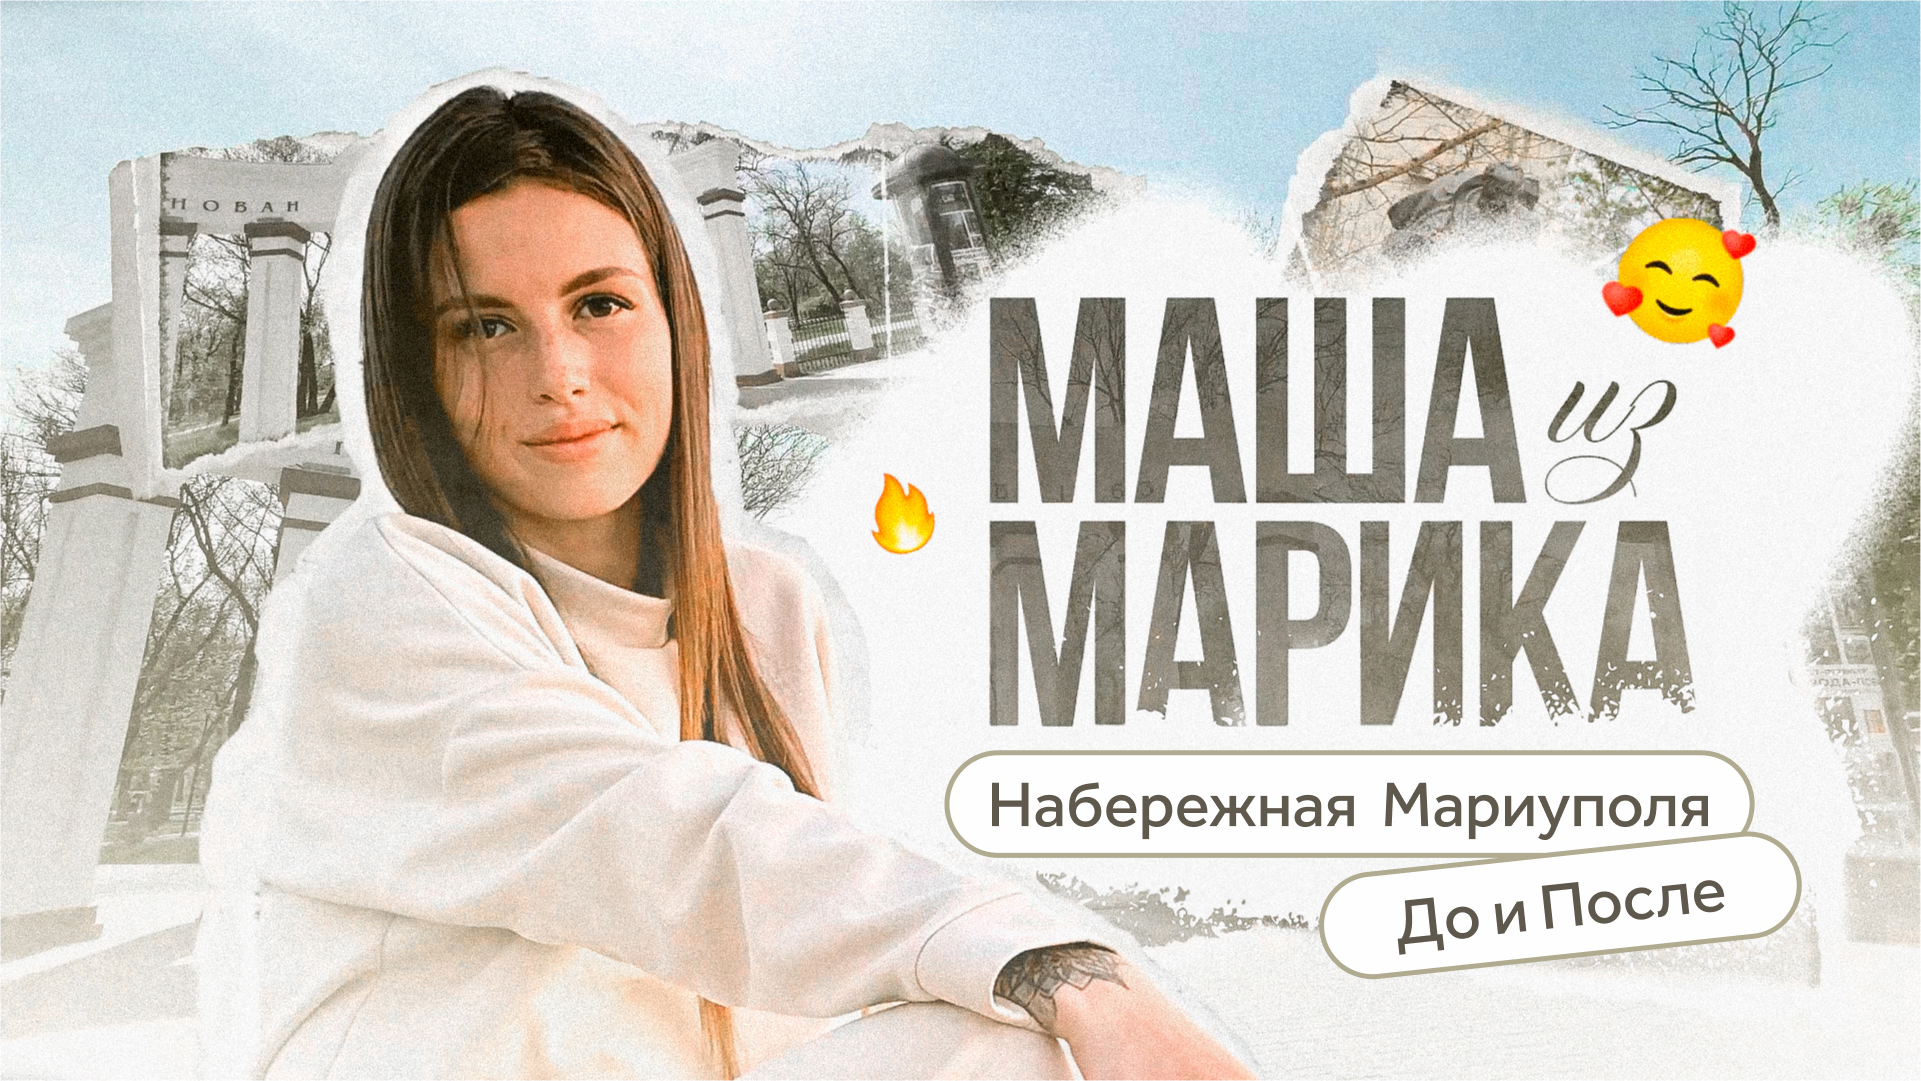 Новая набережная Мариуполя / Маша из Марика / Телега Online